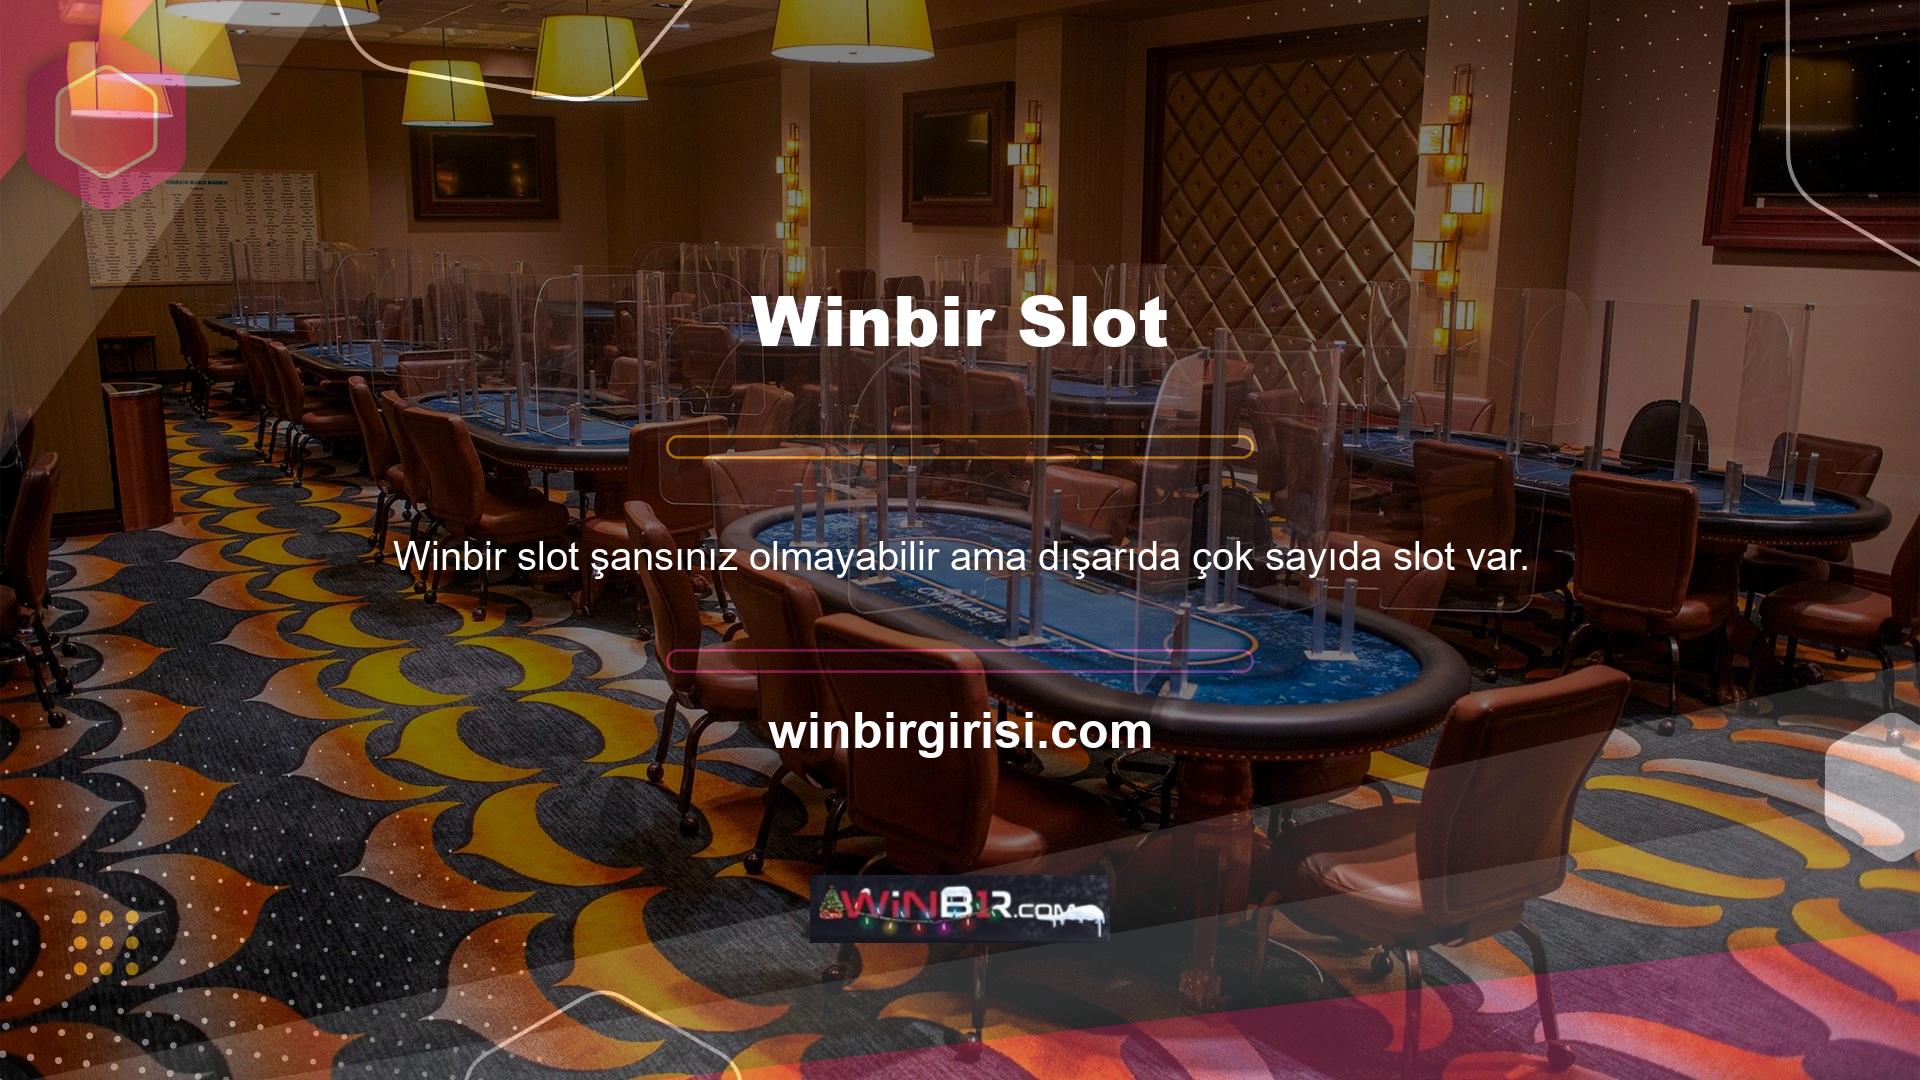 Casino sitelerinde Winbir slotlarını oynayarak milyoner olabilir ve küçük miktarlarda para kazanabilirsiniz